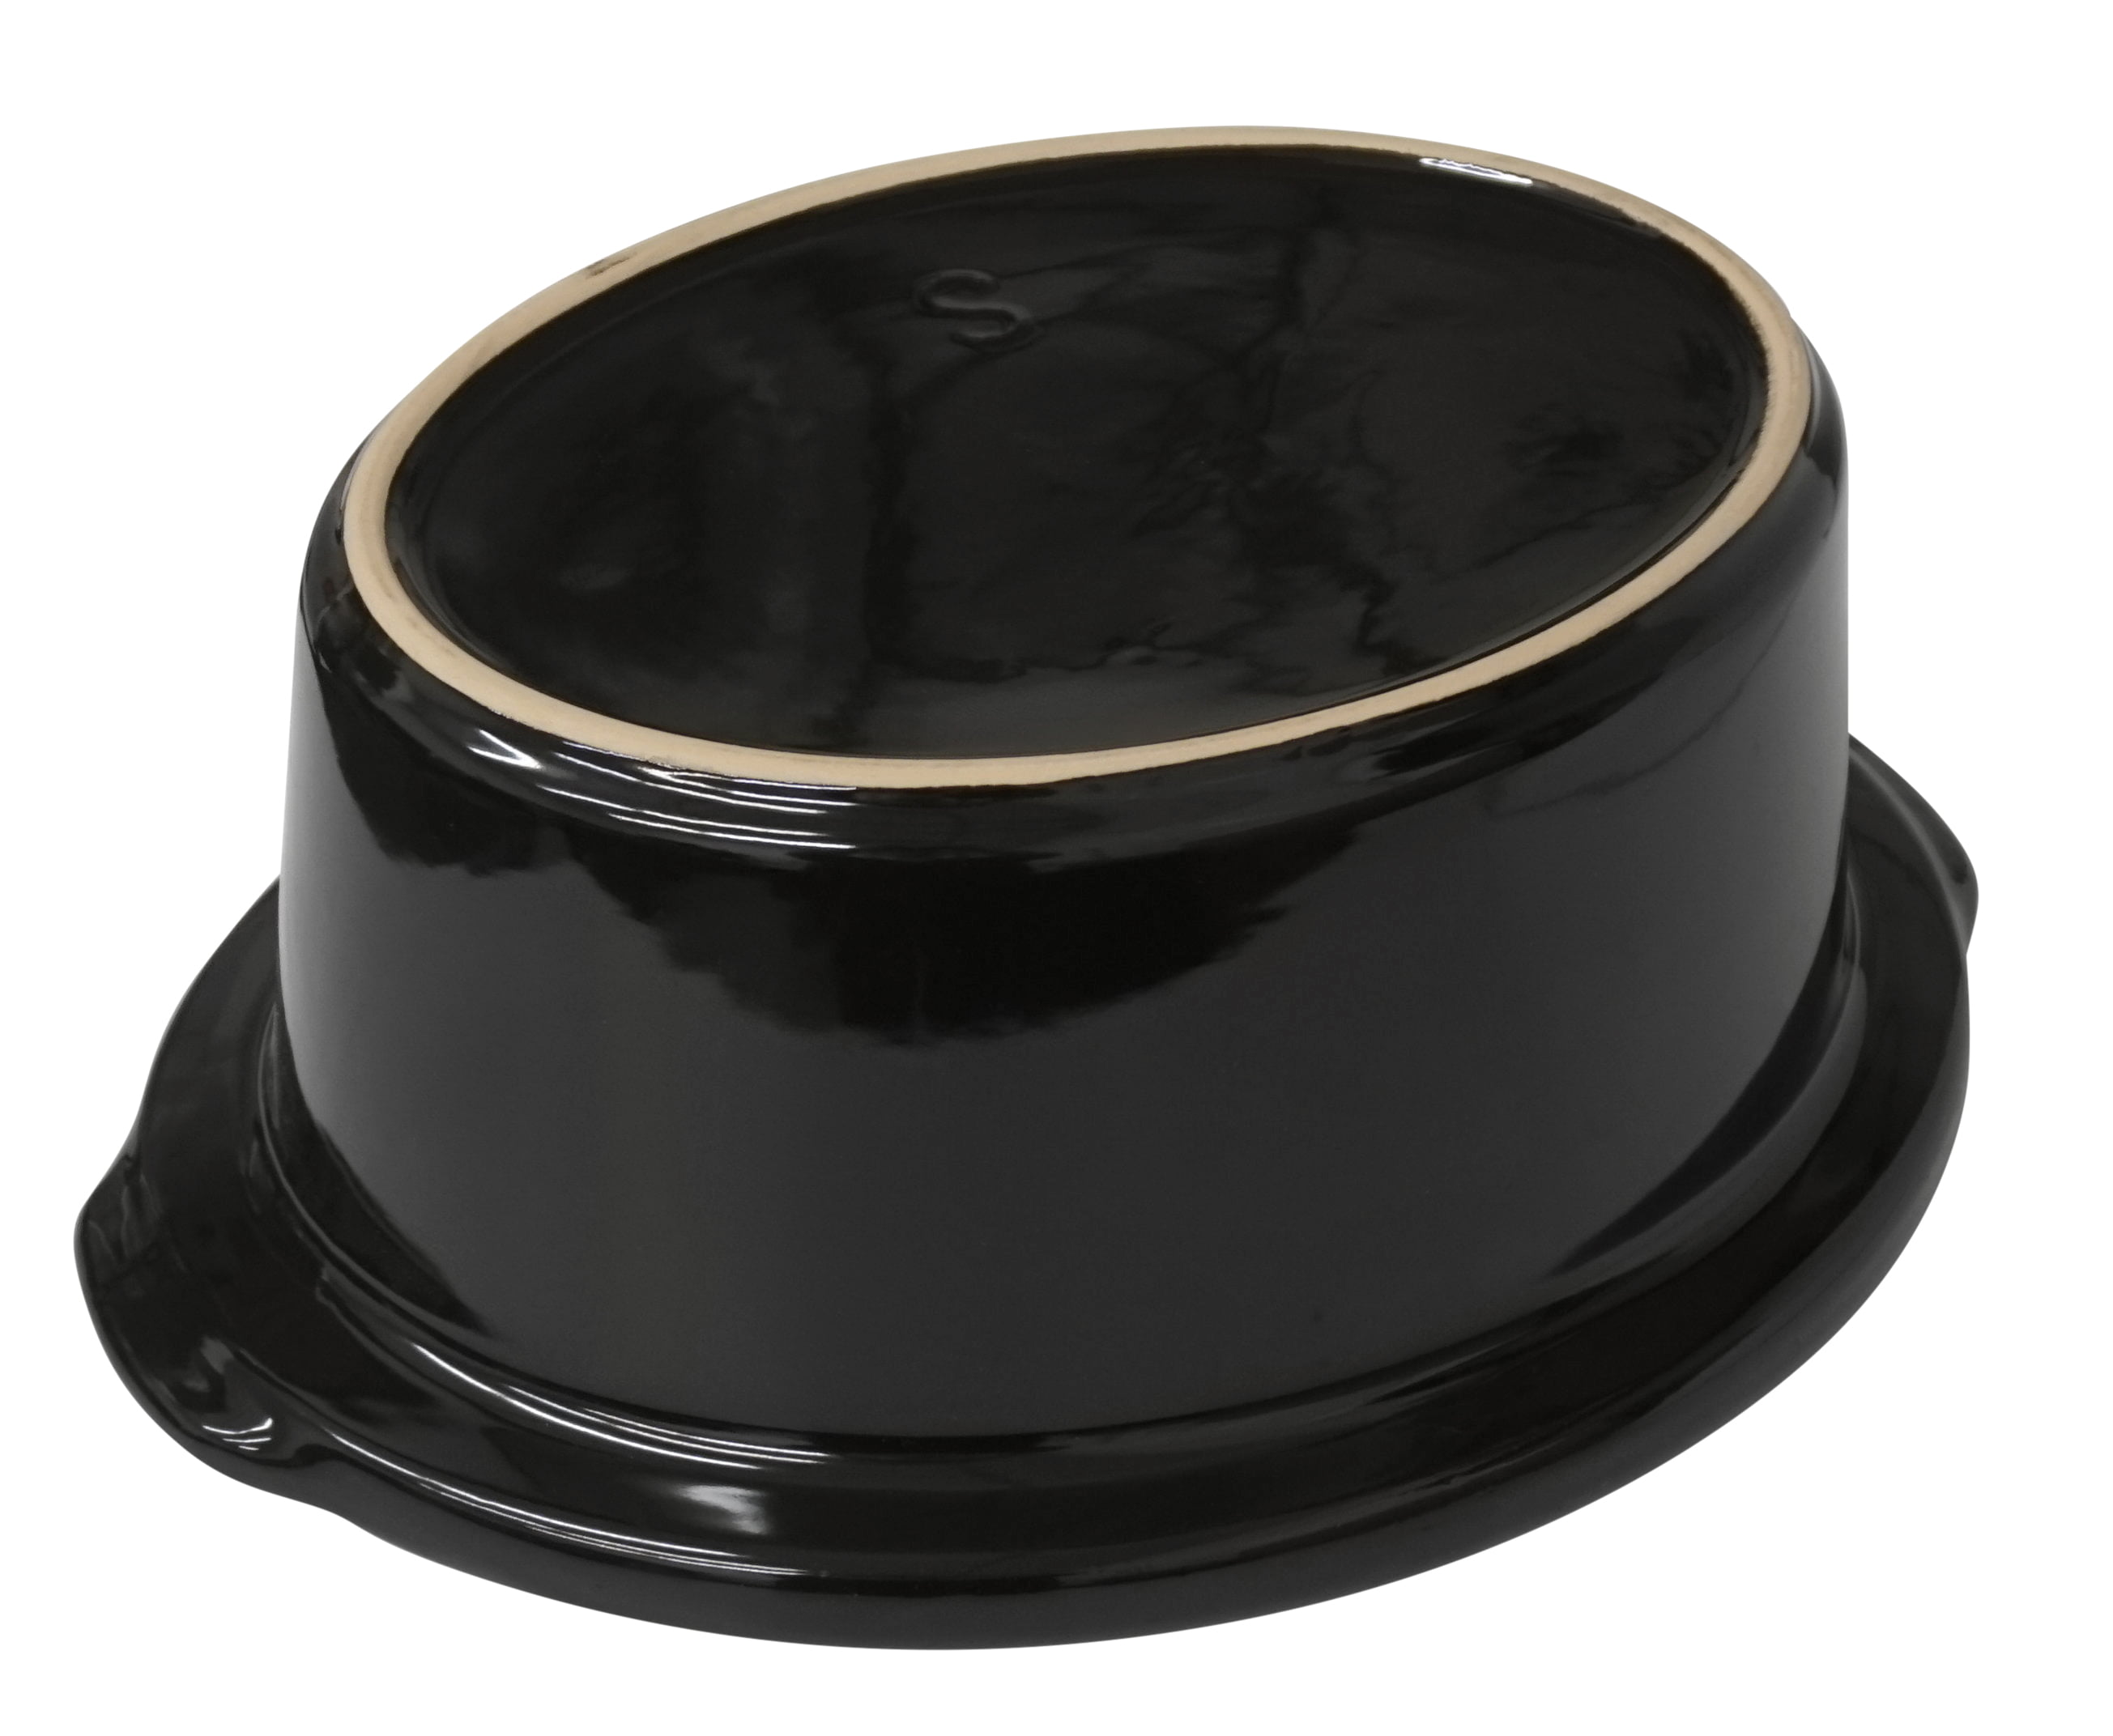 Seneca River 6 qt Black Stoneware Fits Crock-pot Lift & Serve Slow Cooker, 183602-000-000